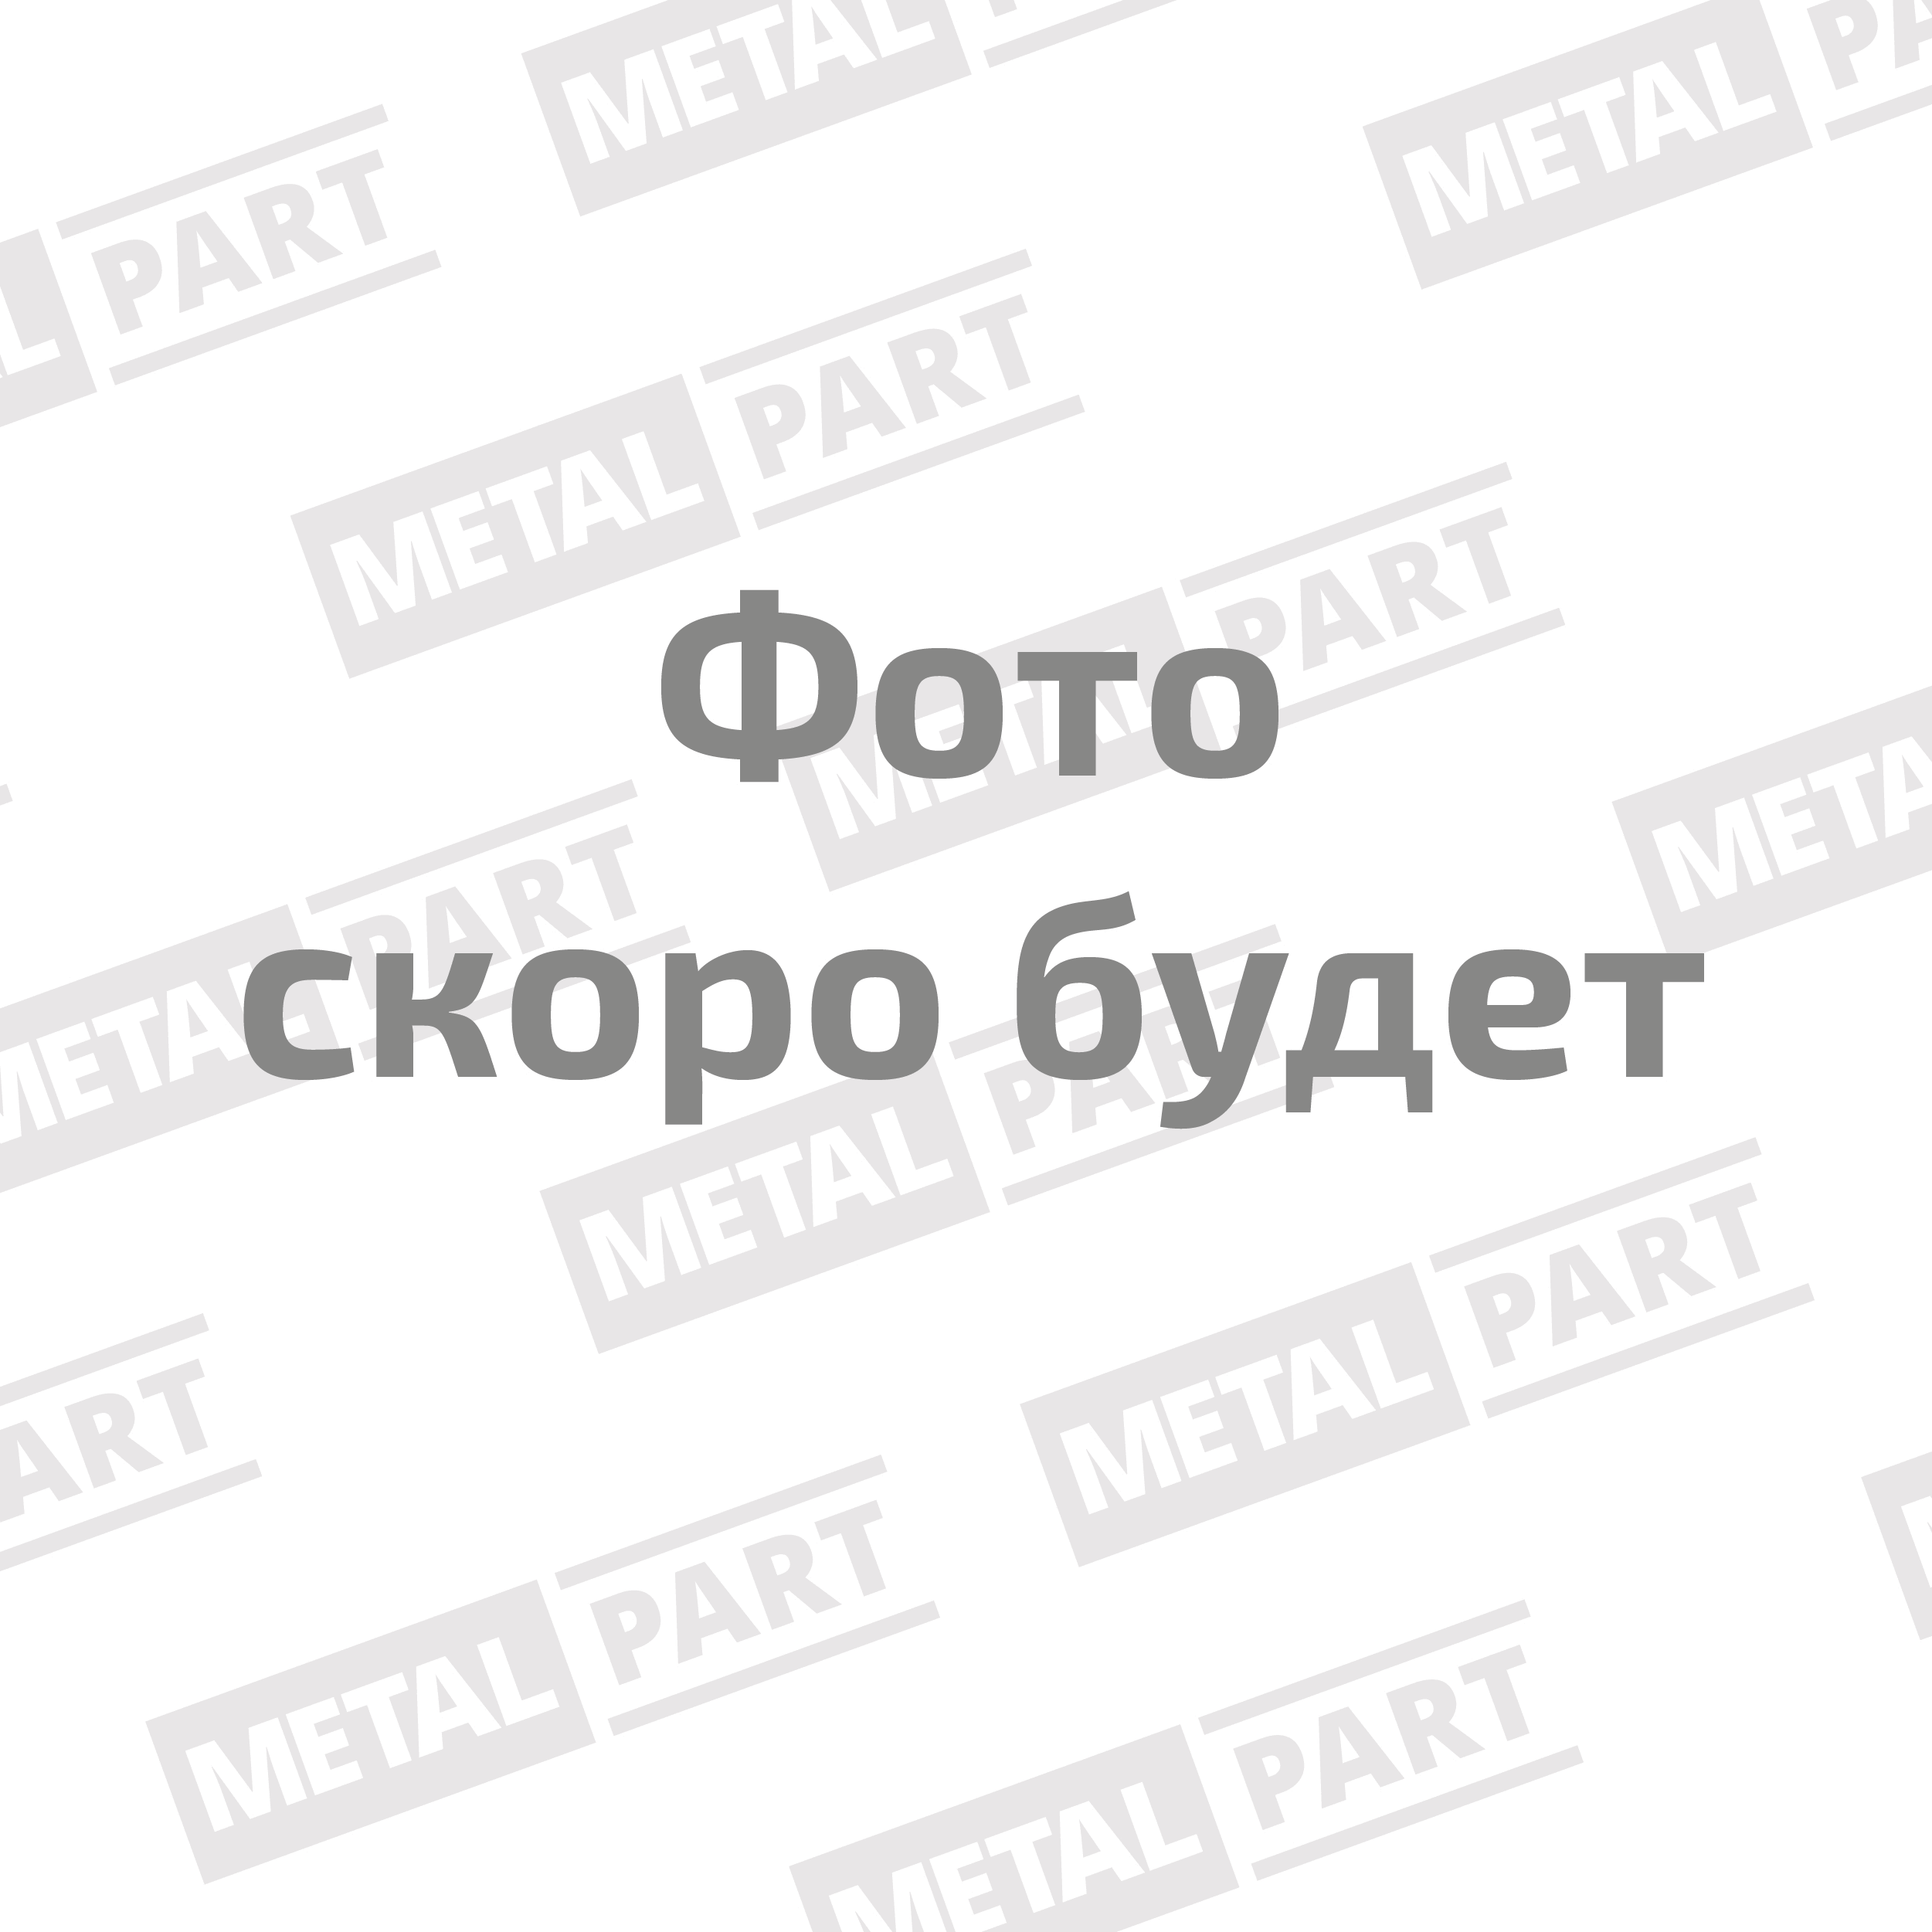 Термостат для автомобилей производства ООО "УАЗ" с двигателями ЗМЗ-514, 51432, 409051 (температура +